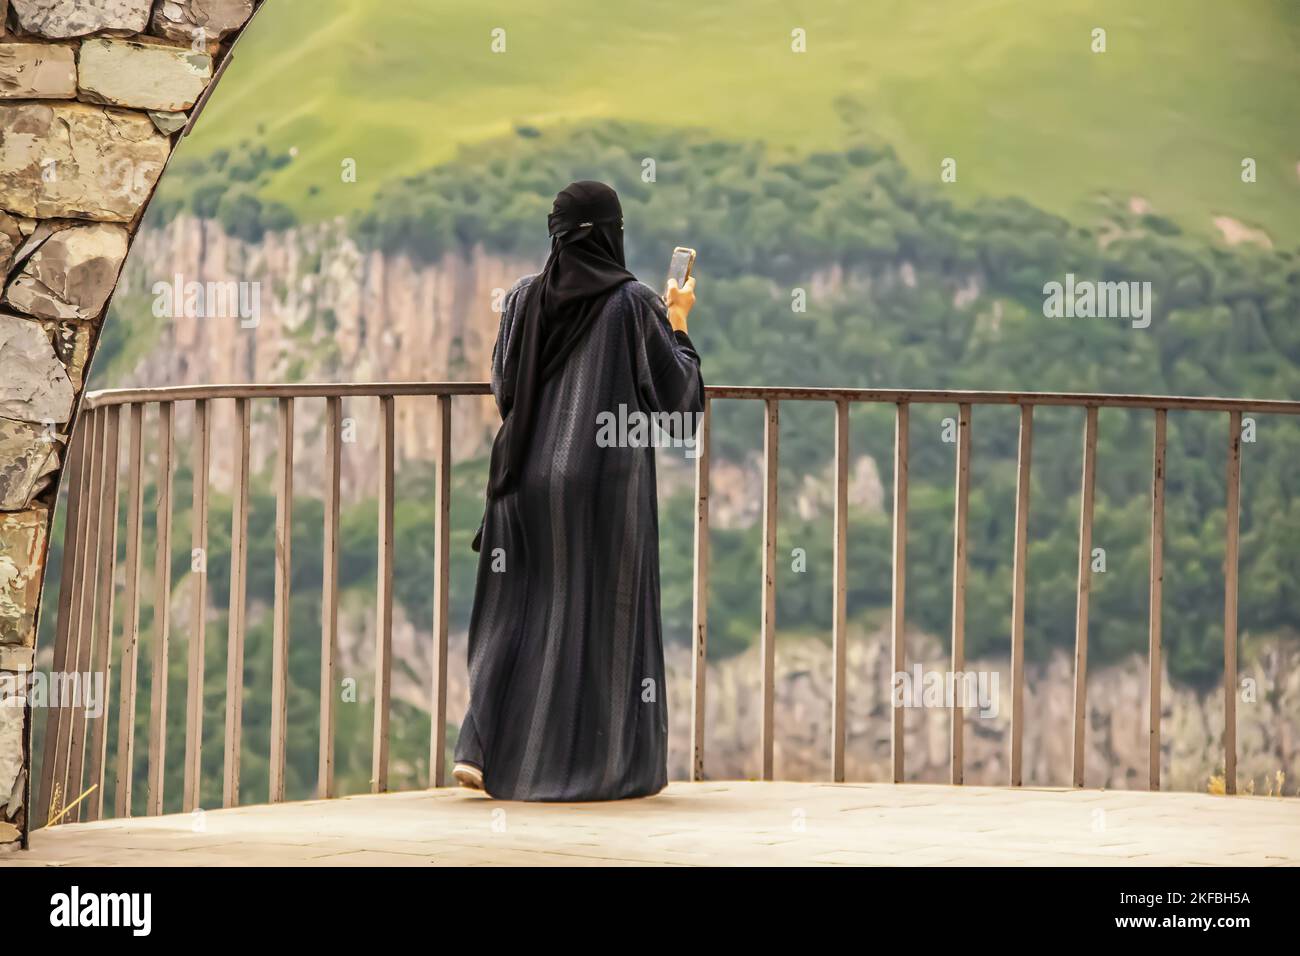 Vue d'une femme à niqab ou burqa debout sur le rail en prenant une photo de la vue panoramique avec un téléphone cellulaire Banque D'Images